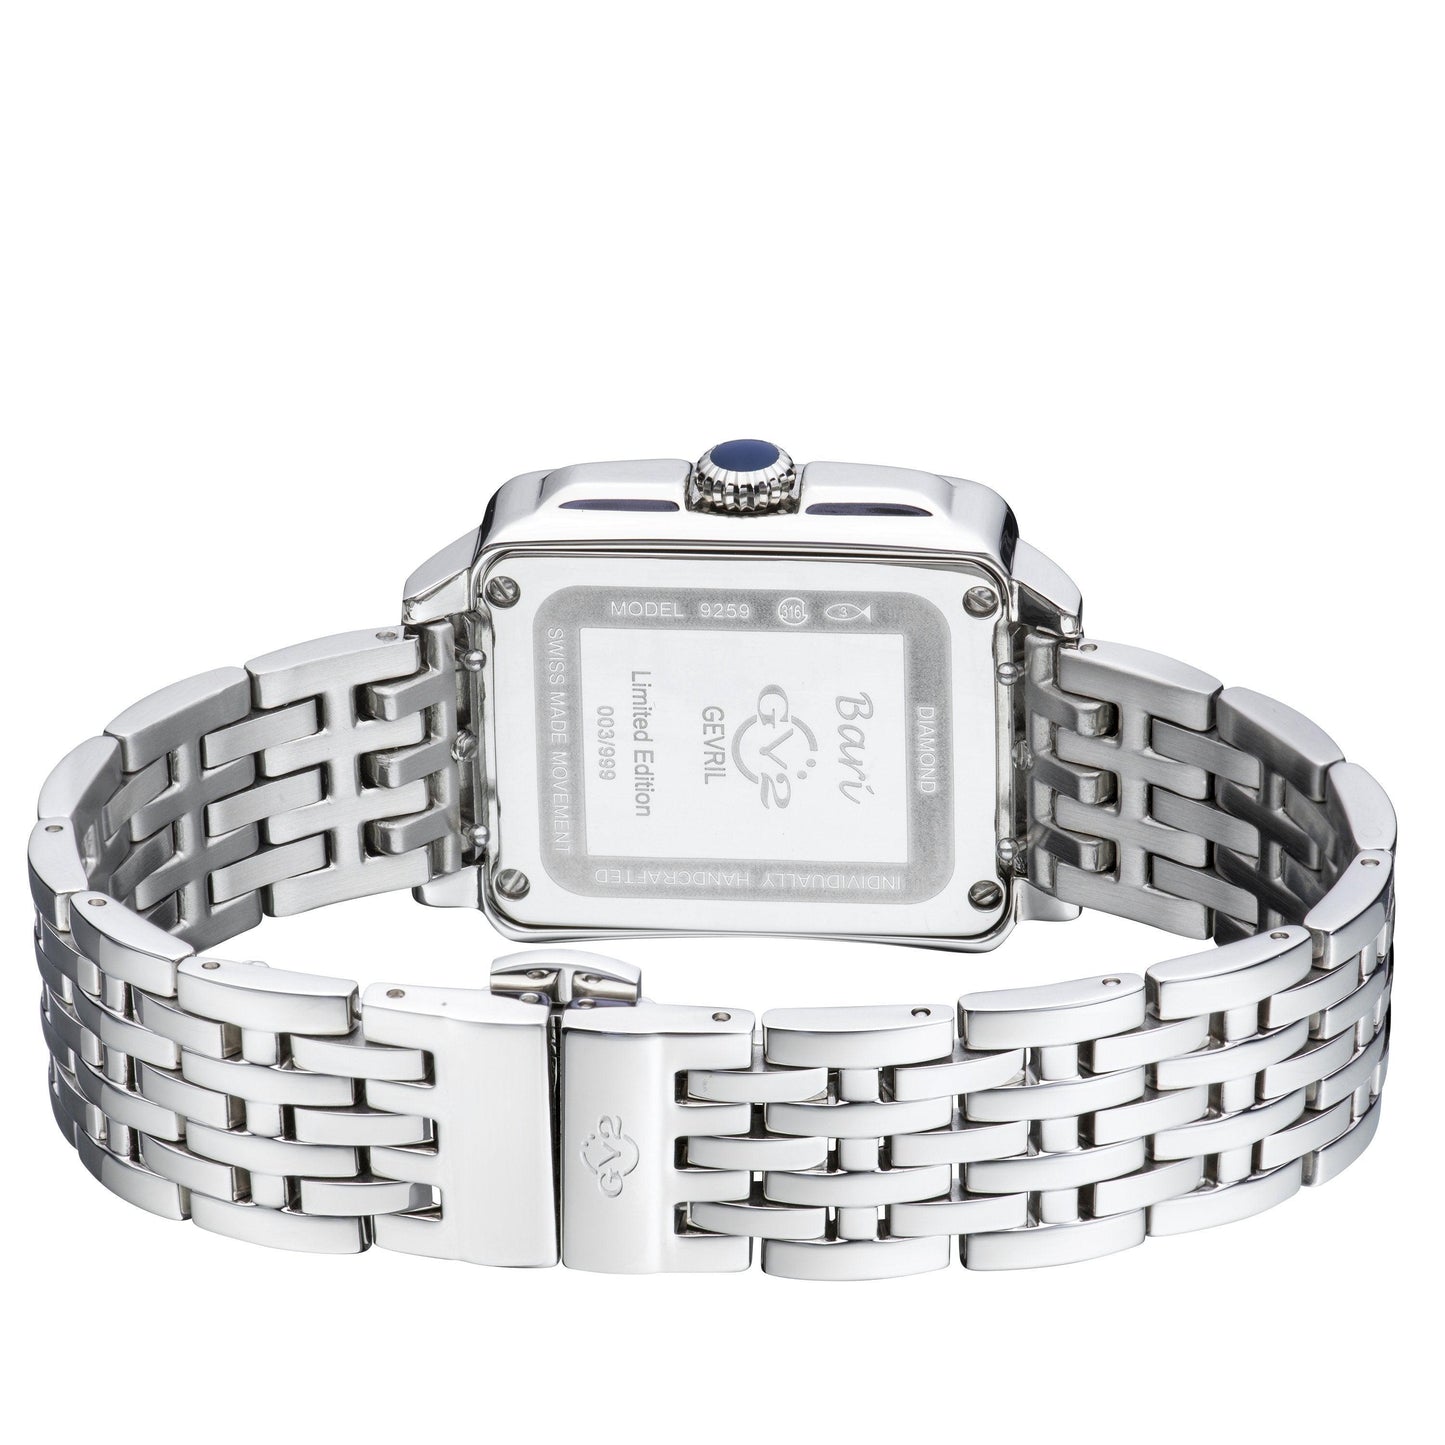 Gevril-Luxury-Swiss-Watches-GV2 Bari Diamond-9259B